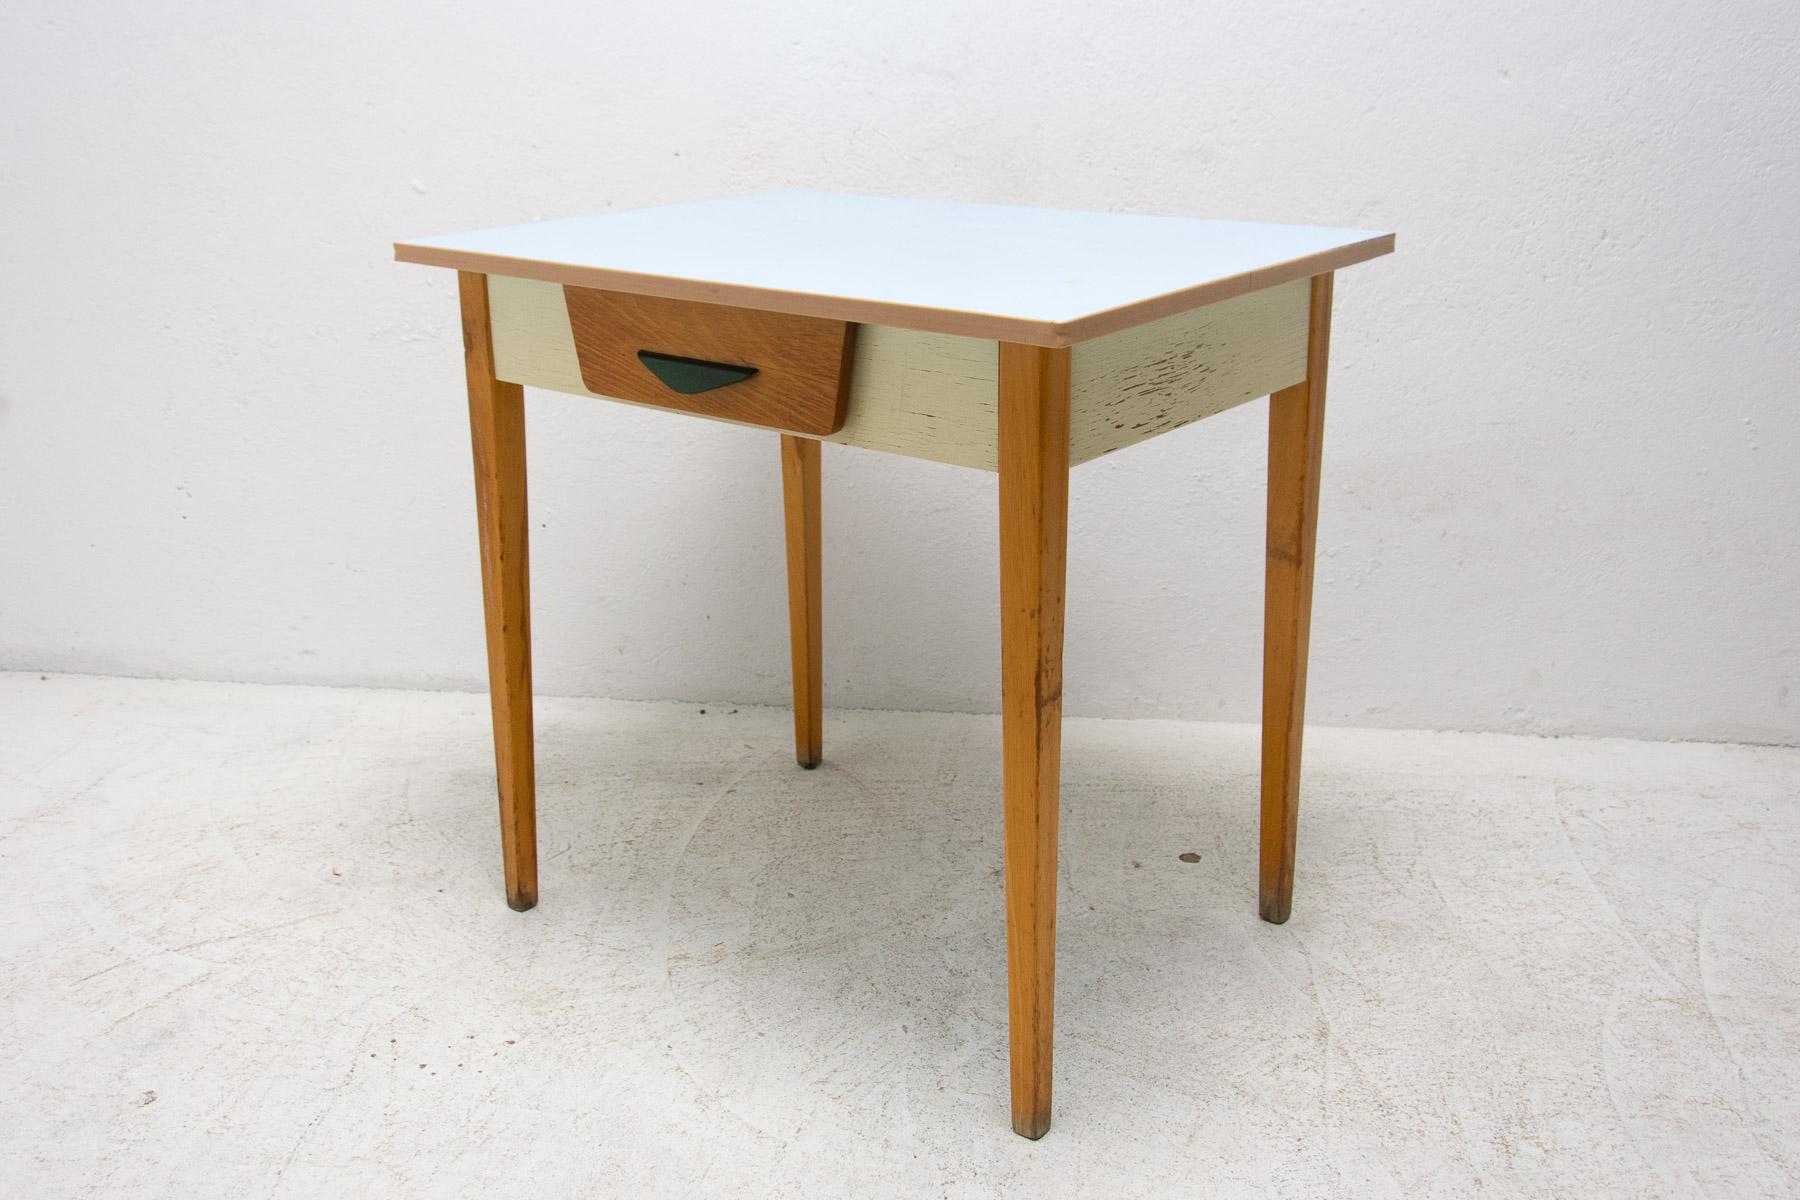 Table d'appoint du milieu du siècle avec un tiroir. Il a été fabriqué dans l'ancienne Tchécoslovaquie dans les années 1960. La table est faite de bois et de formica et peinte en ivoire. L'ensemble est en bon état Vintage, montre des signes d'âge et